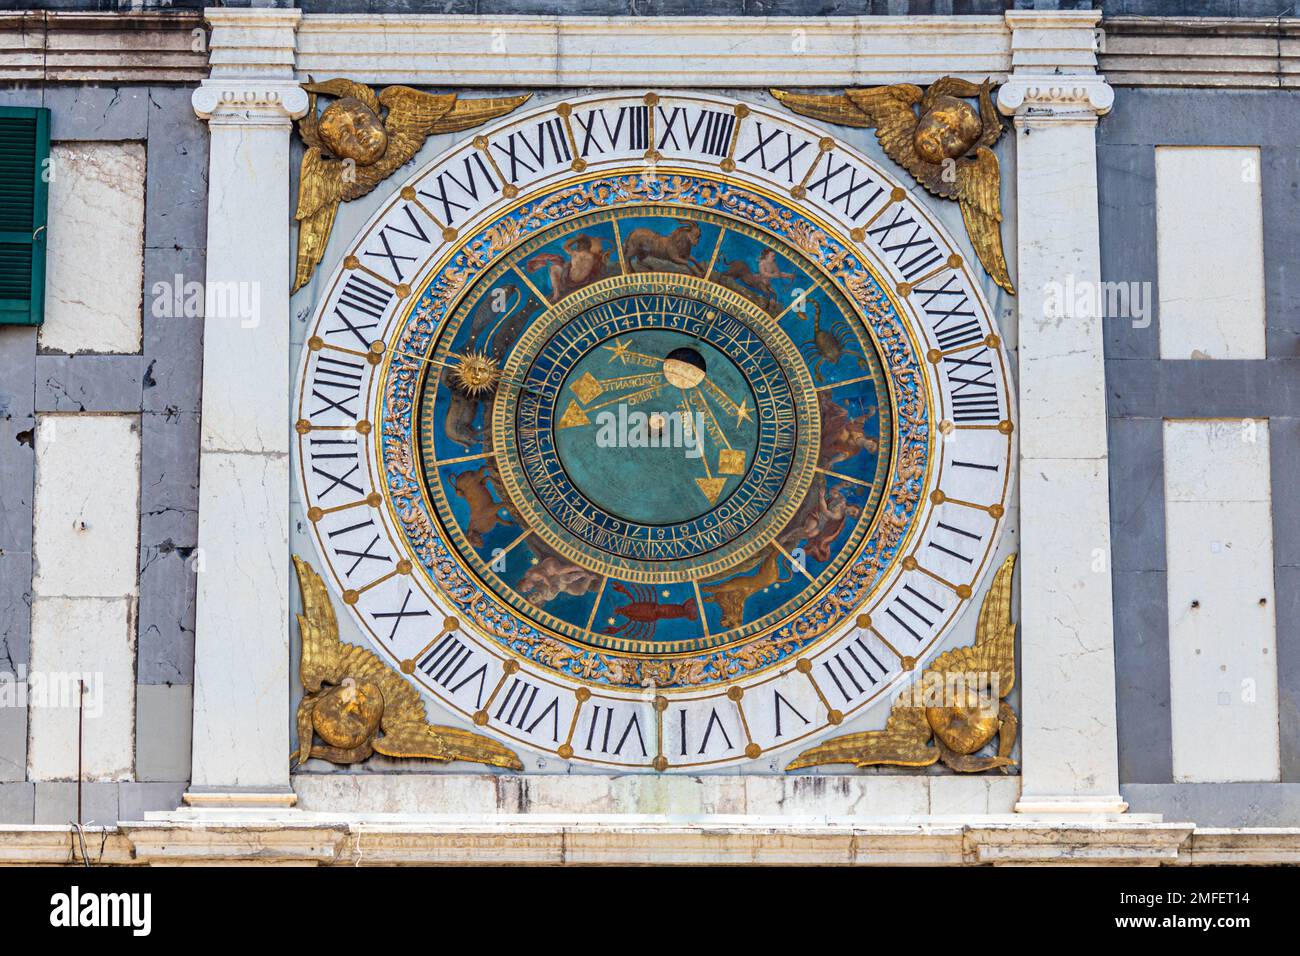 Der Uhrenturm auf der Piazza della Loggia, Brescia, ist ein neogotisches Wahrzeichen aus dem 19. Jahrhundert mit einer funktionierenden mechanischen Uhr und 4 Glocken. Stockfoto